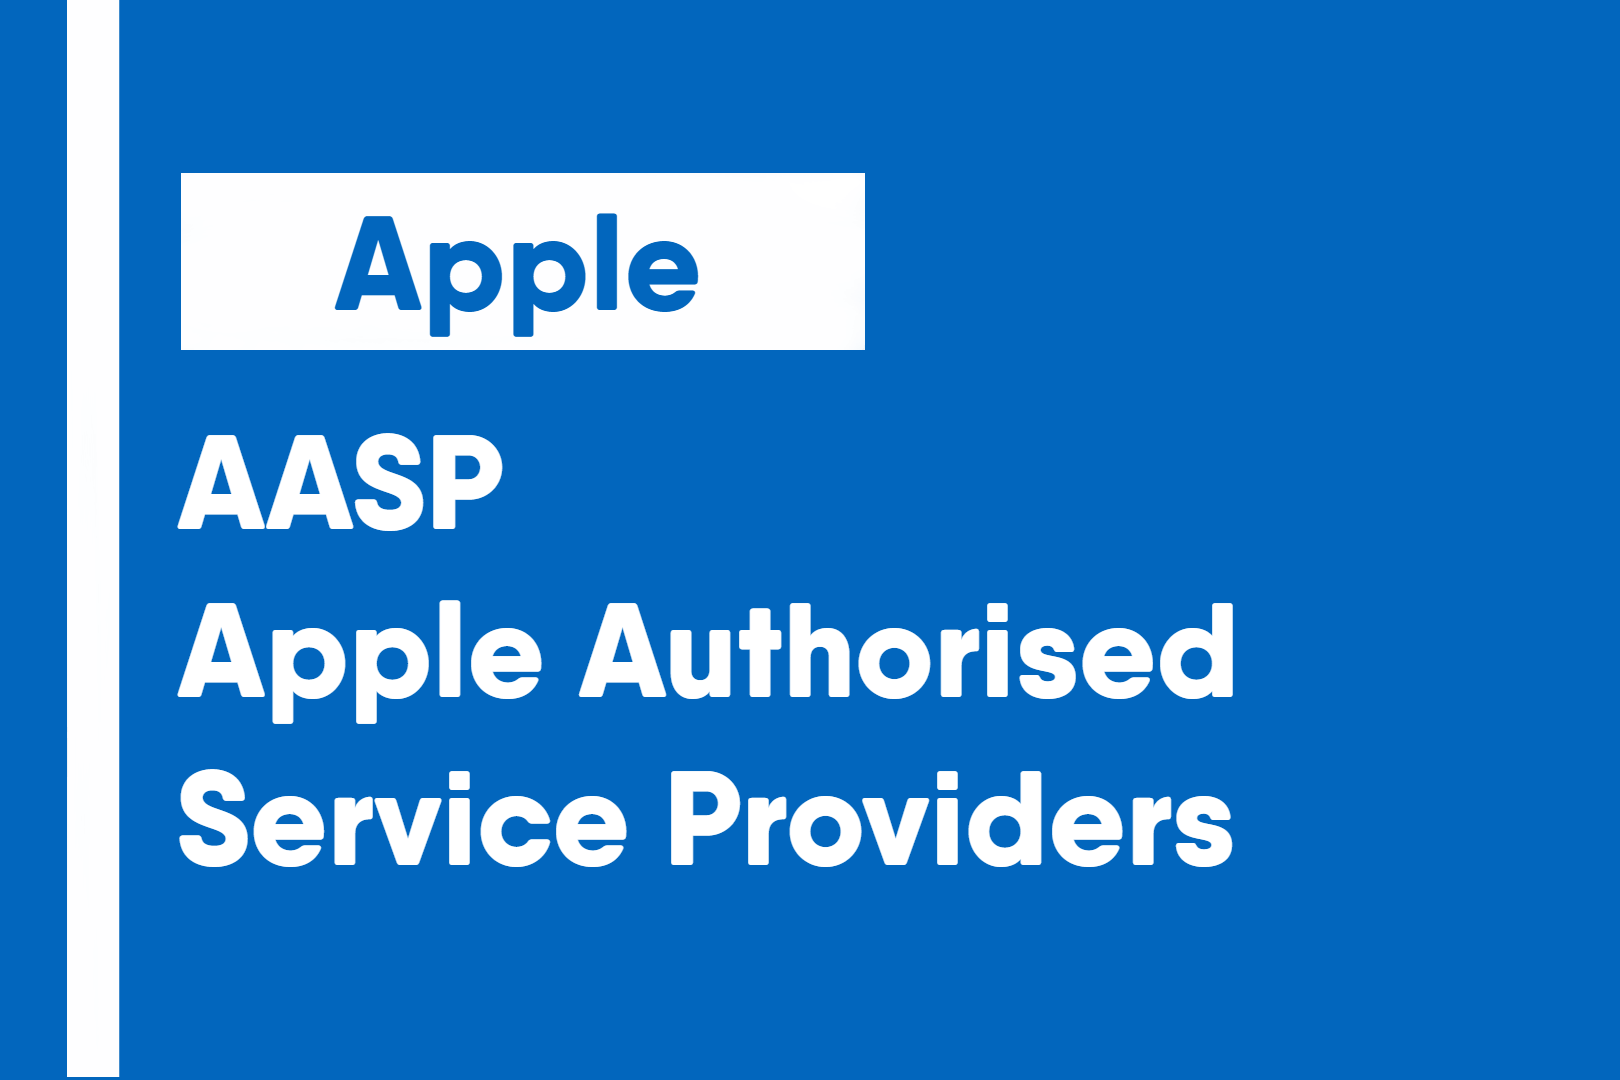 Apple Authorised Service Providers